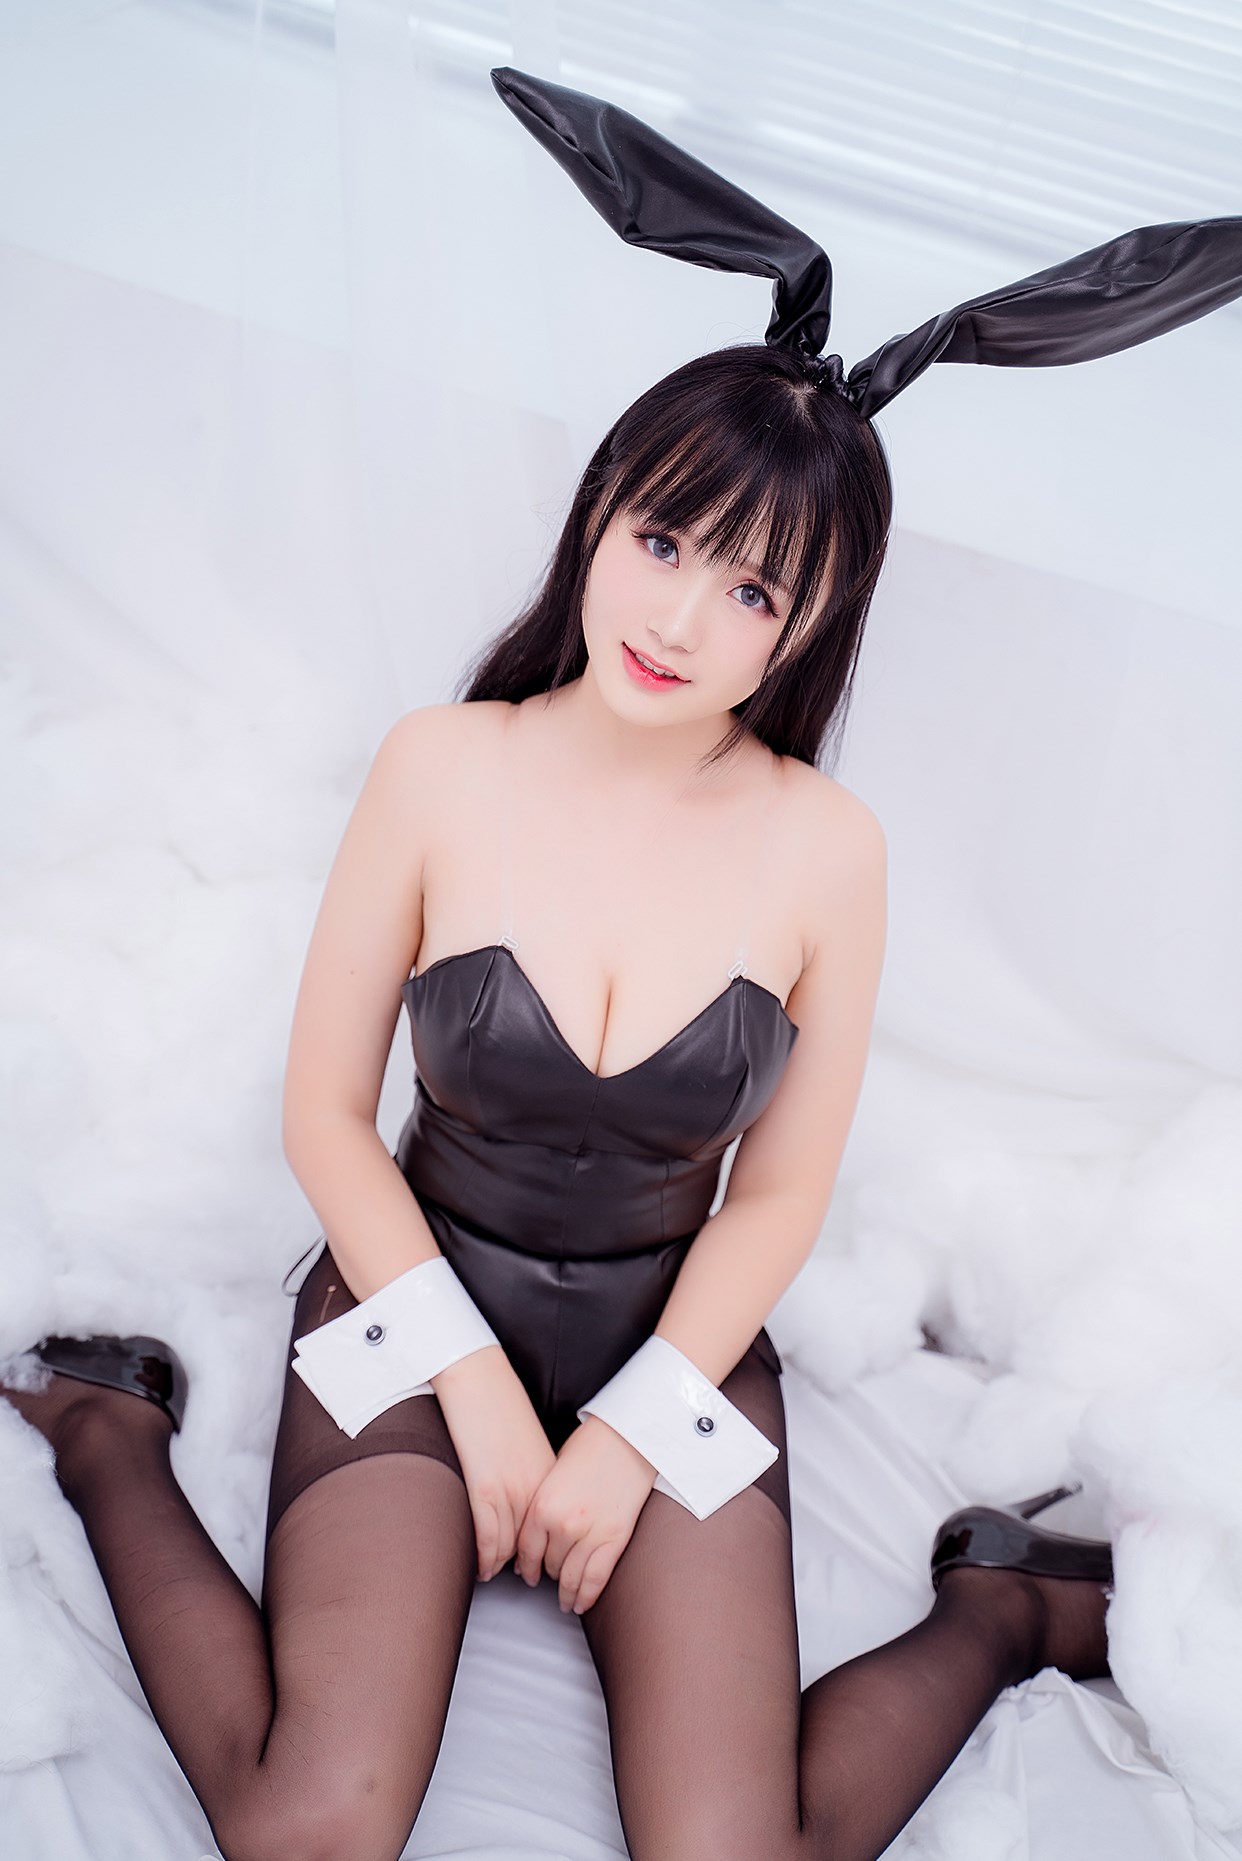 【兔玩映画】兔女郎vol.18-荼蘼 兔玩映画 第30张